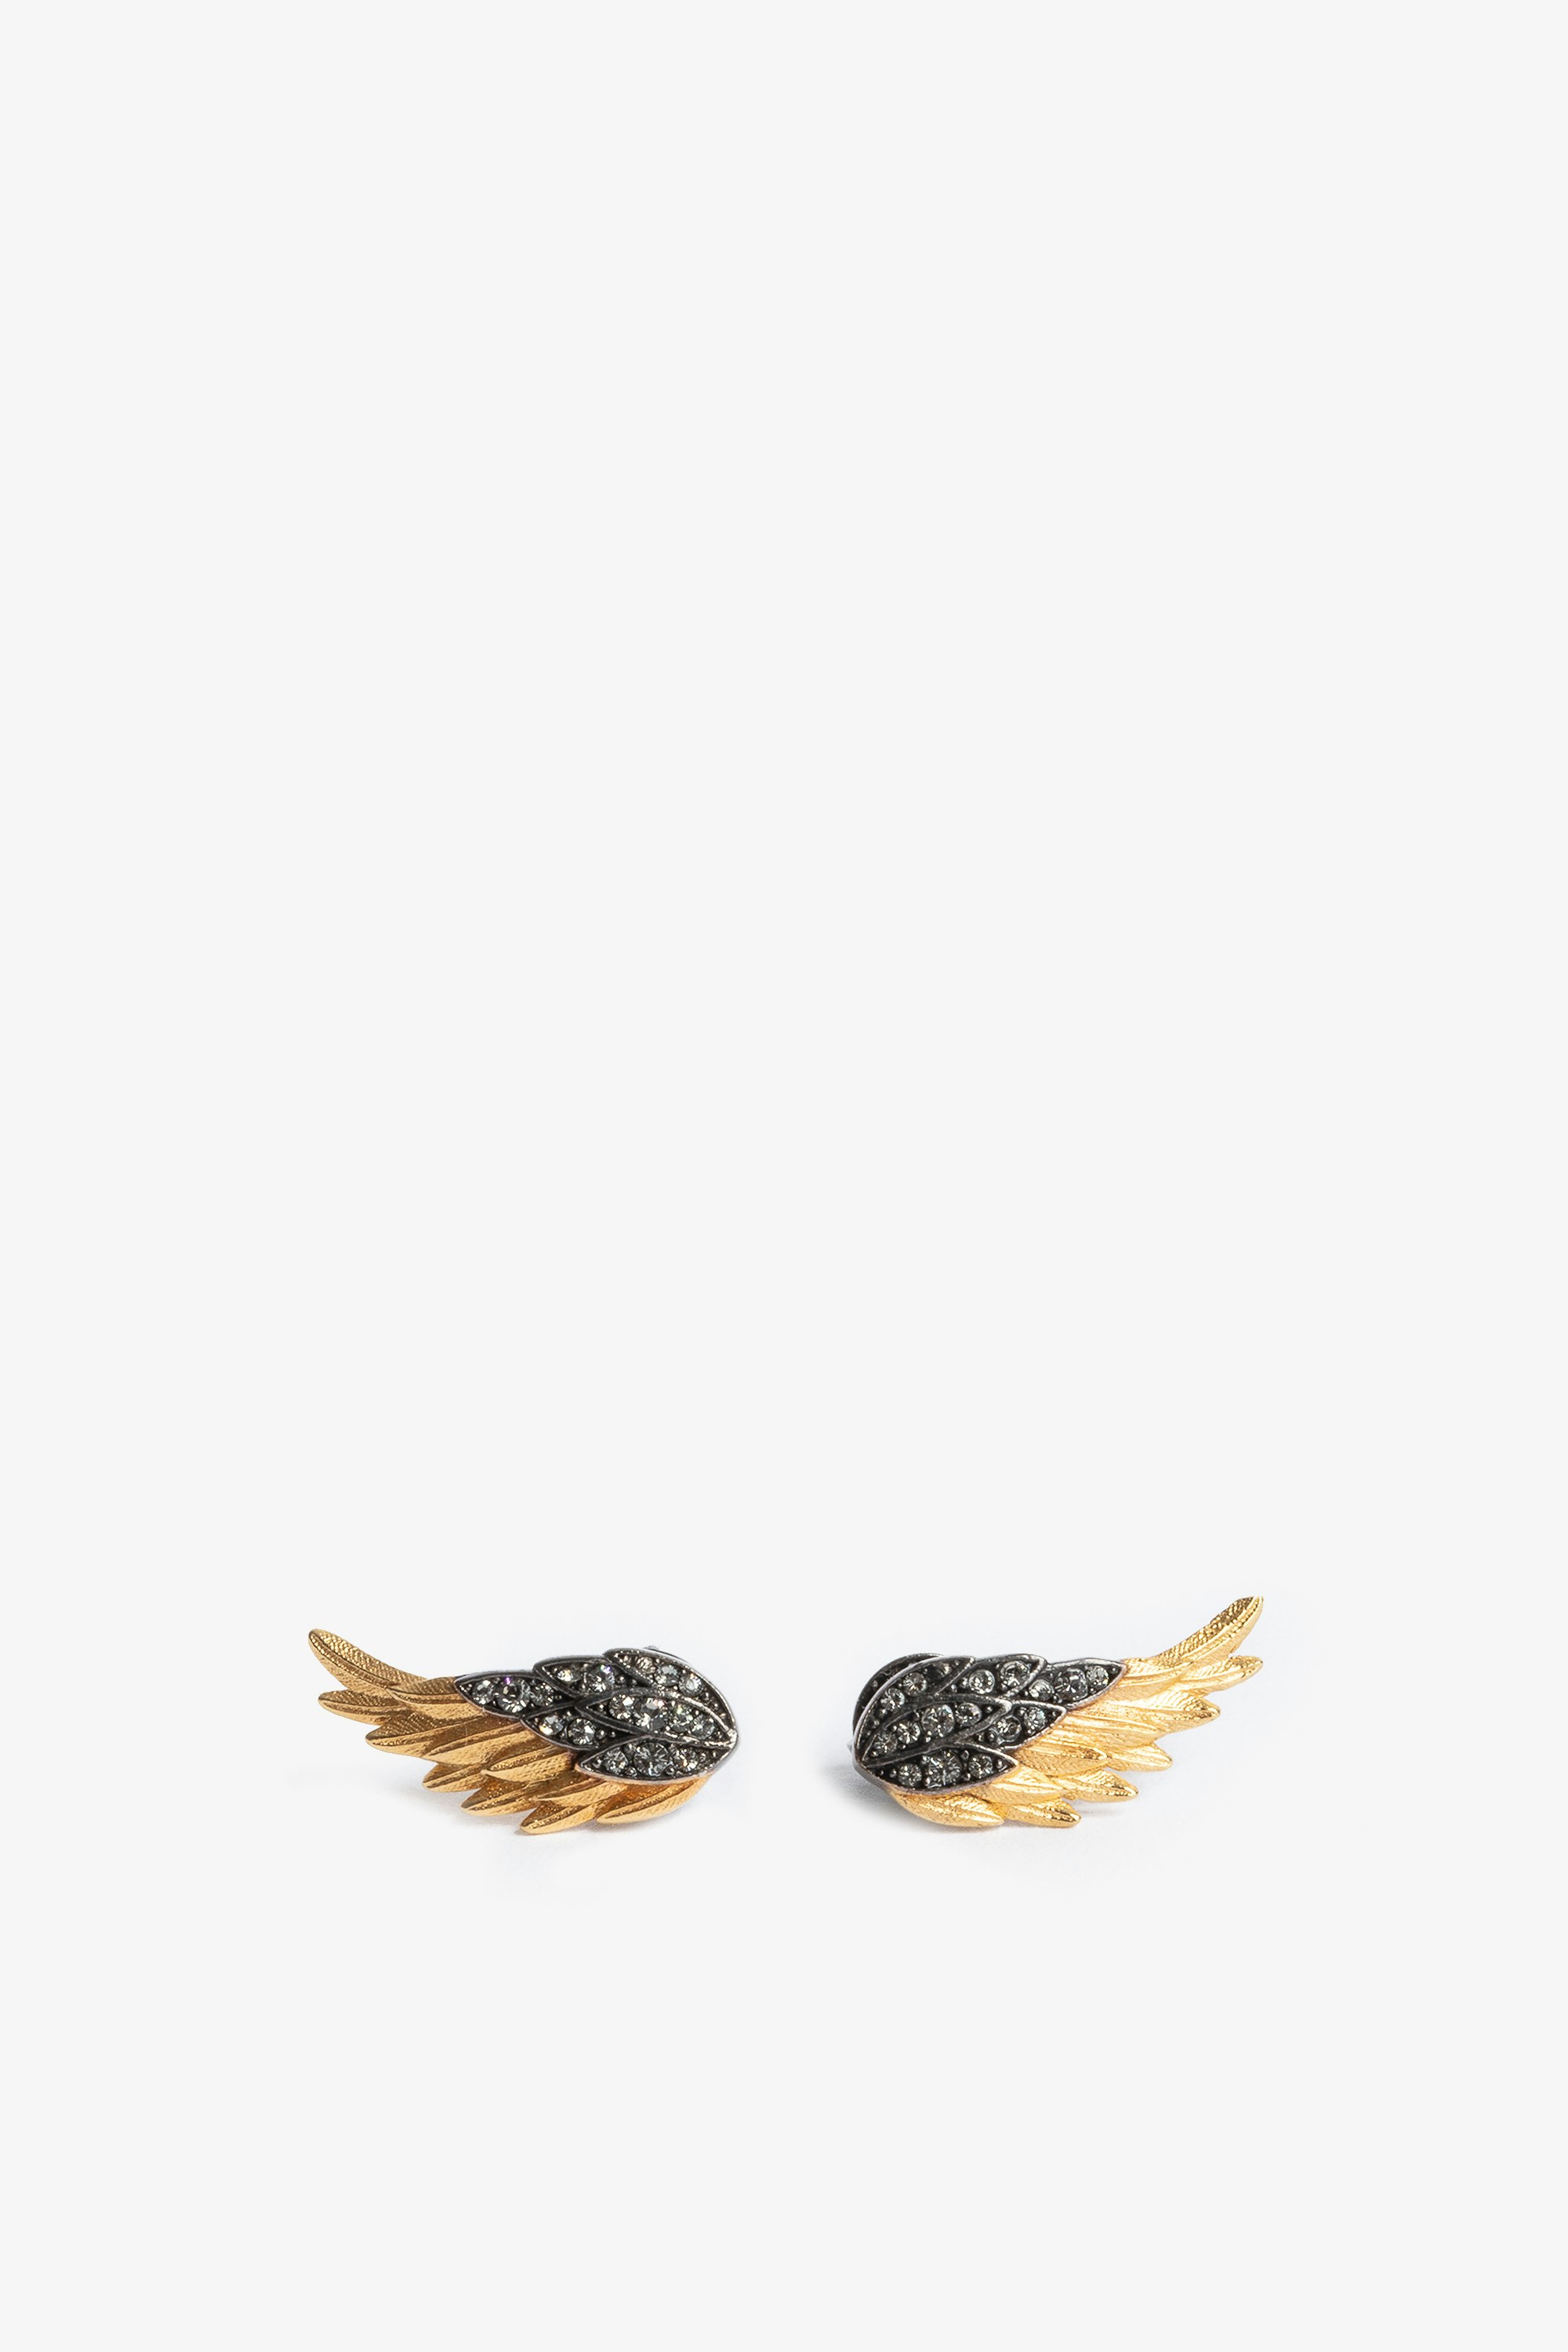 Pendientes Rock Feather Pendientes de mujer en forma de alas de latón ennegrecido y dorado con cristales engastados, para mujer